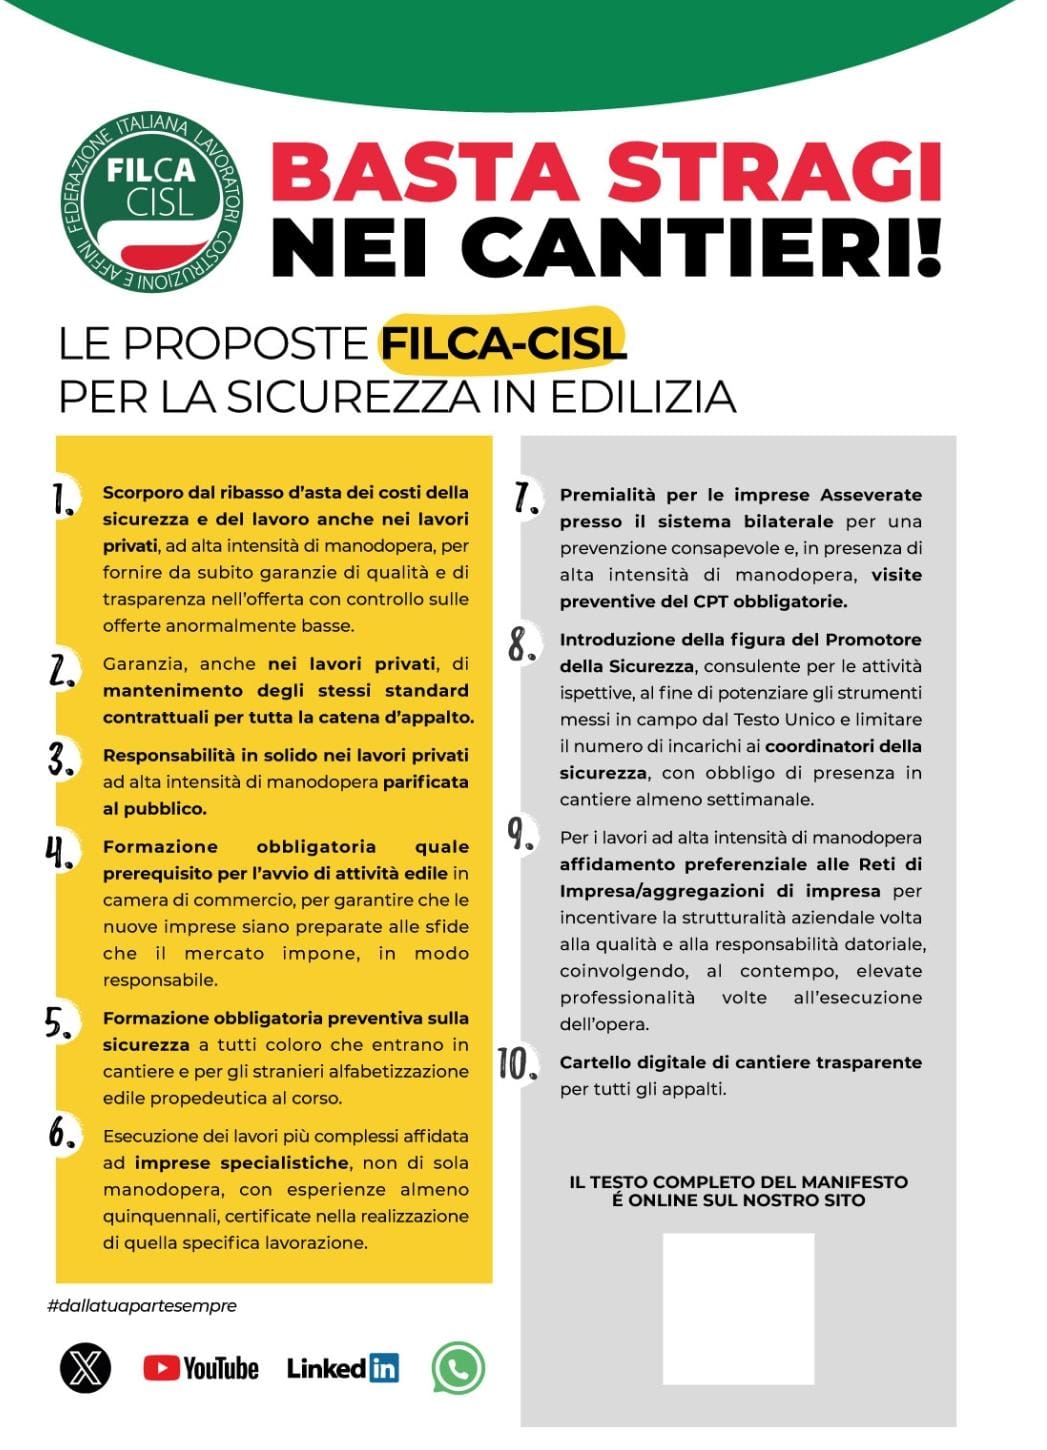 Sicurezza nei cantieri, Filca-Cisl lancia 10 proposte